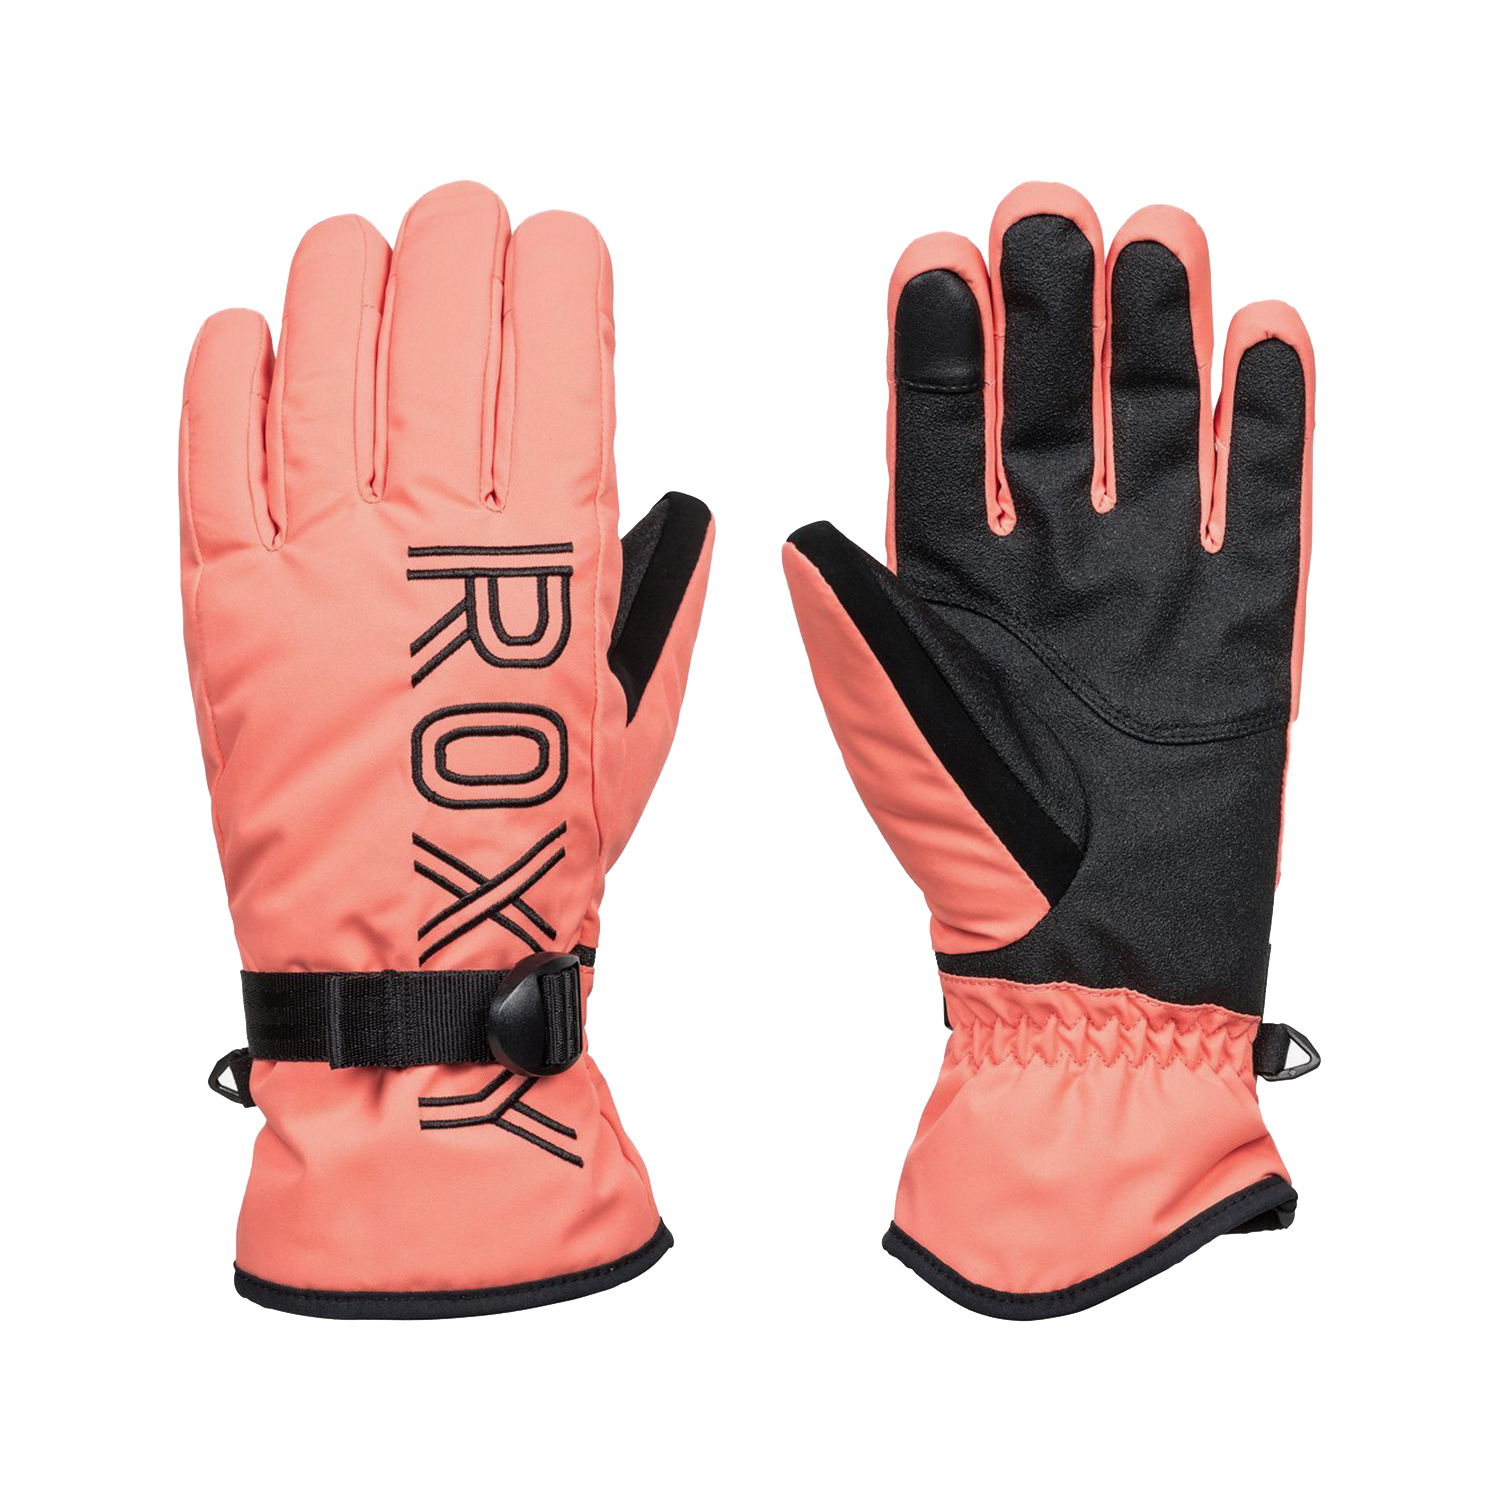 Розовые перчатки сноубордические roxy. Перчатки Roxy женские. Roxy перчатки сноубордические. Roxy перчатки сноубордические женские. Перчатки для горных лыж женские.